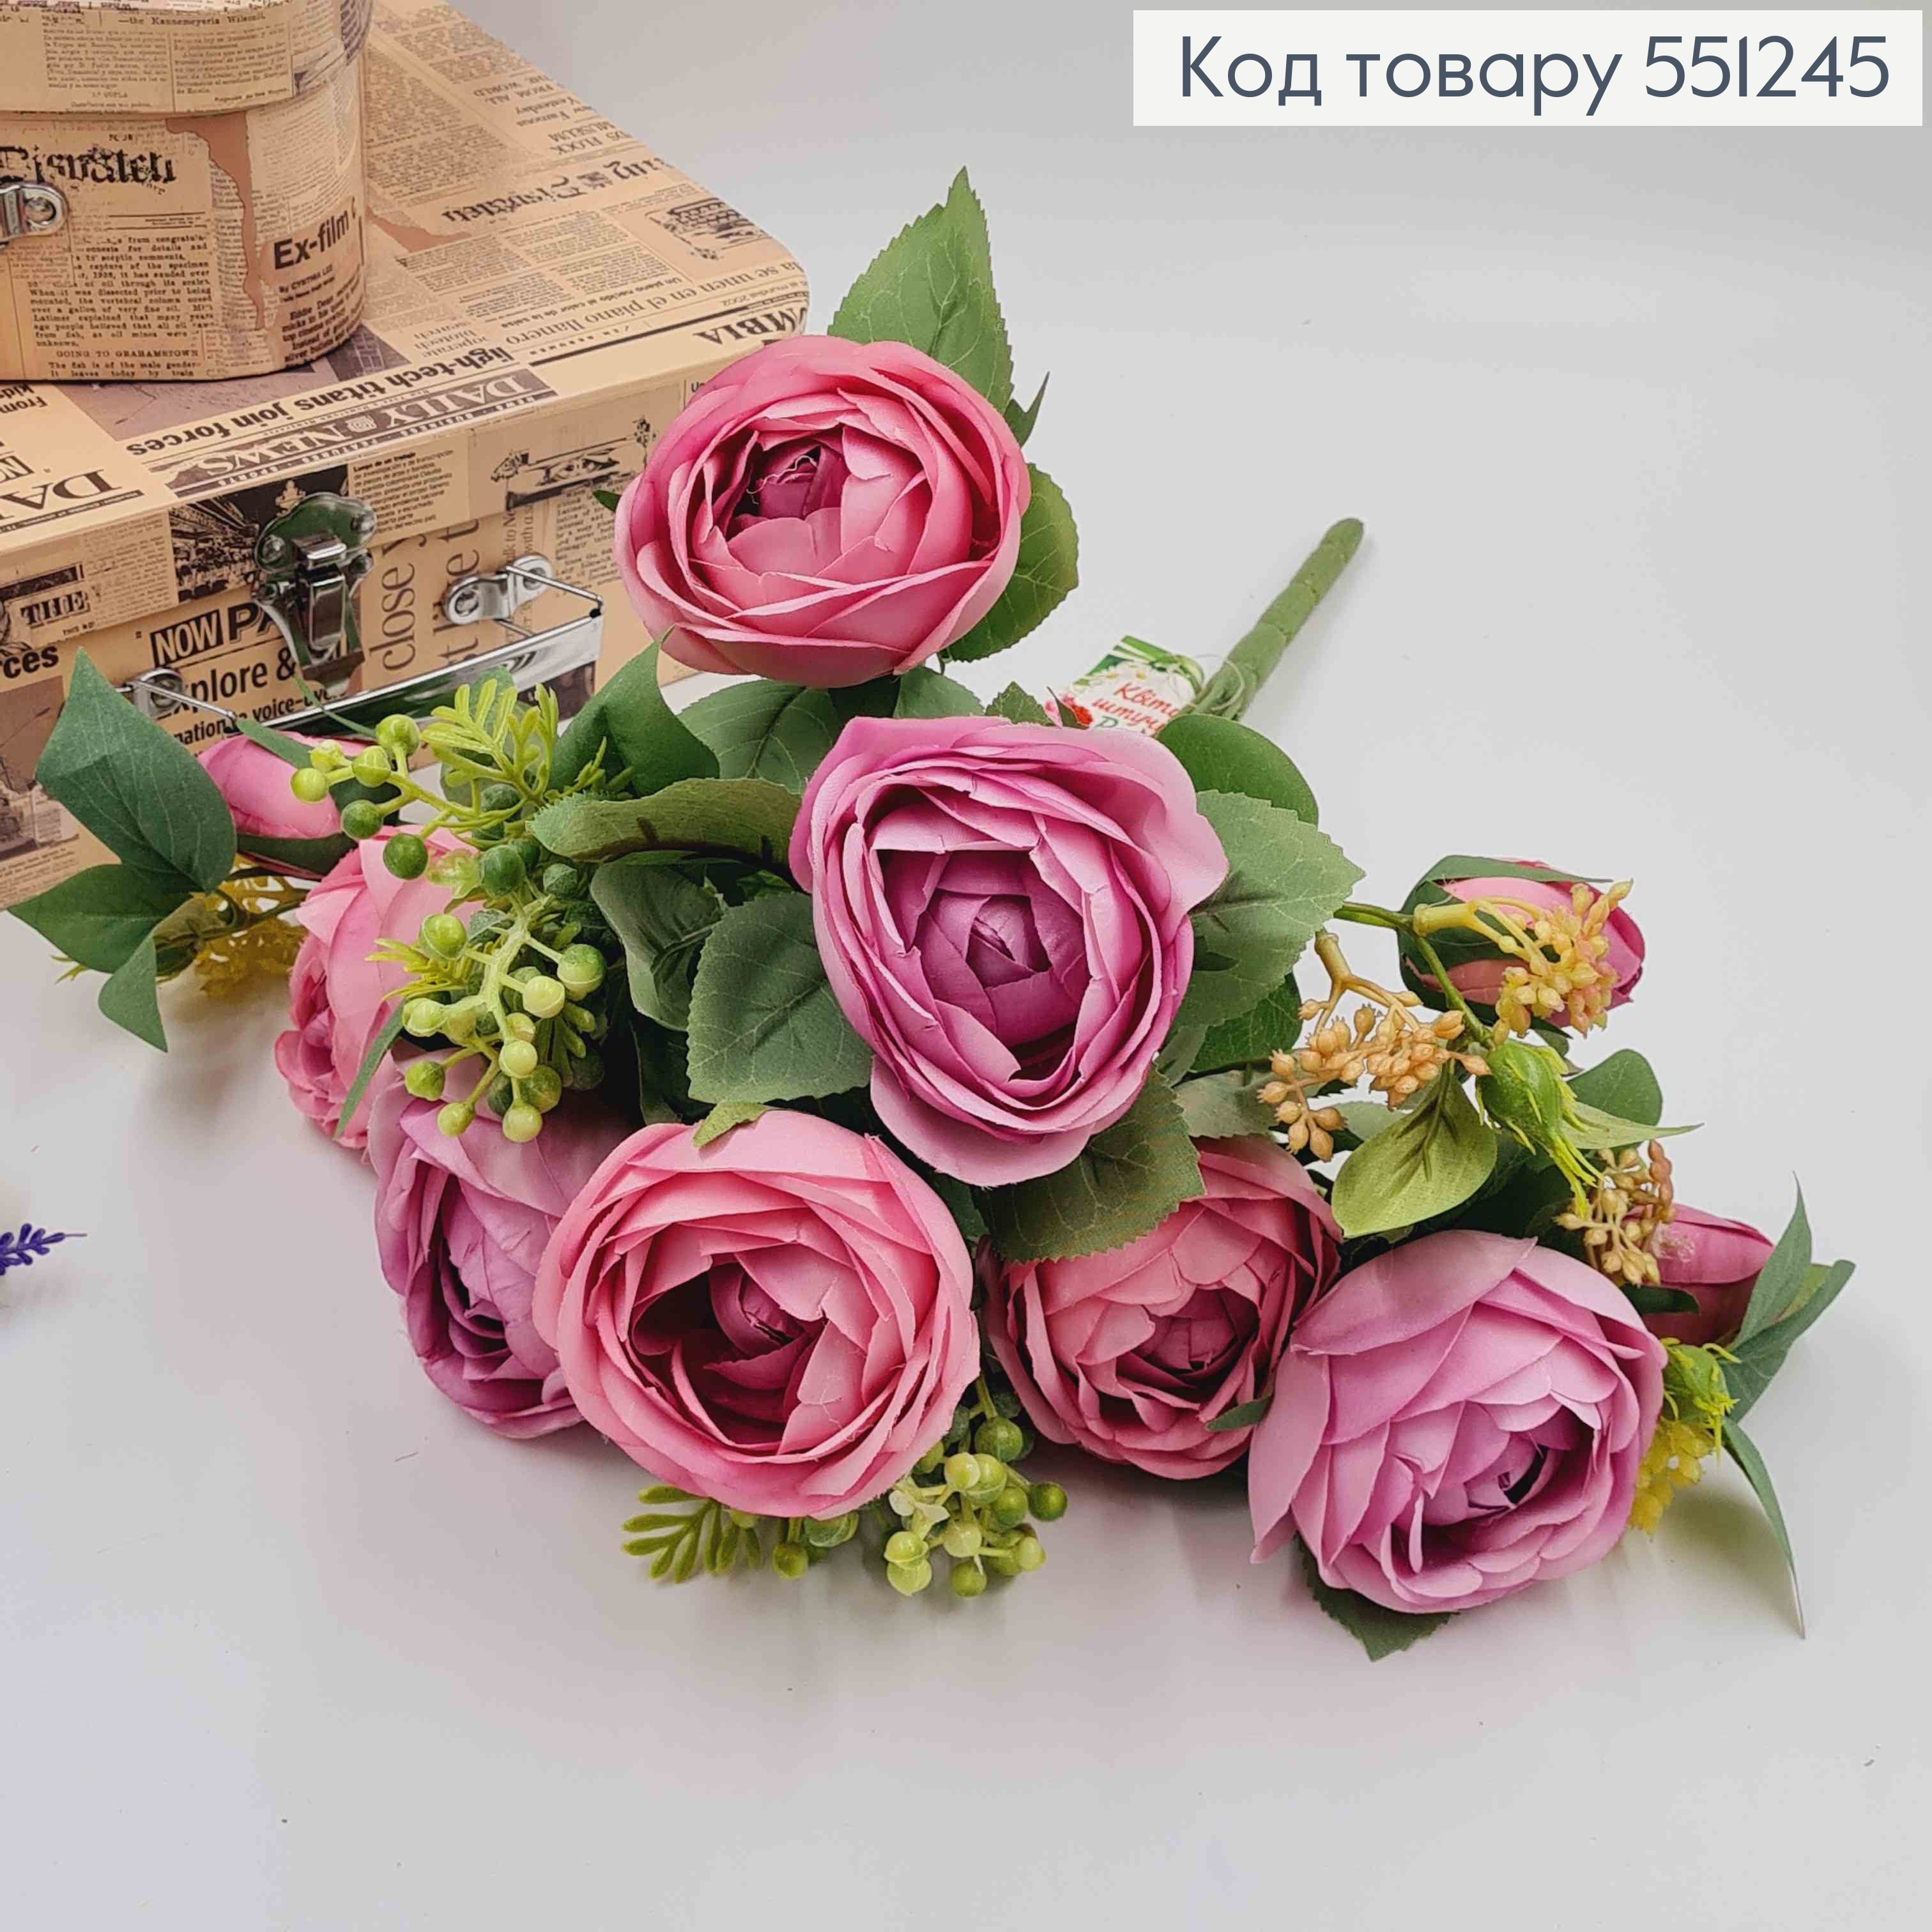 Композиция "Букет розовые и лиловые розы Камелия с зеленым декором", высотой 46см 551245 фото 2